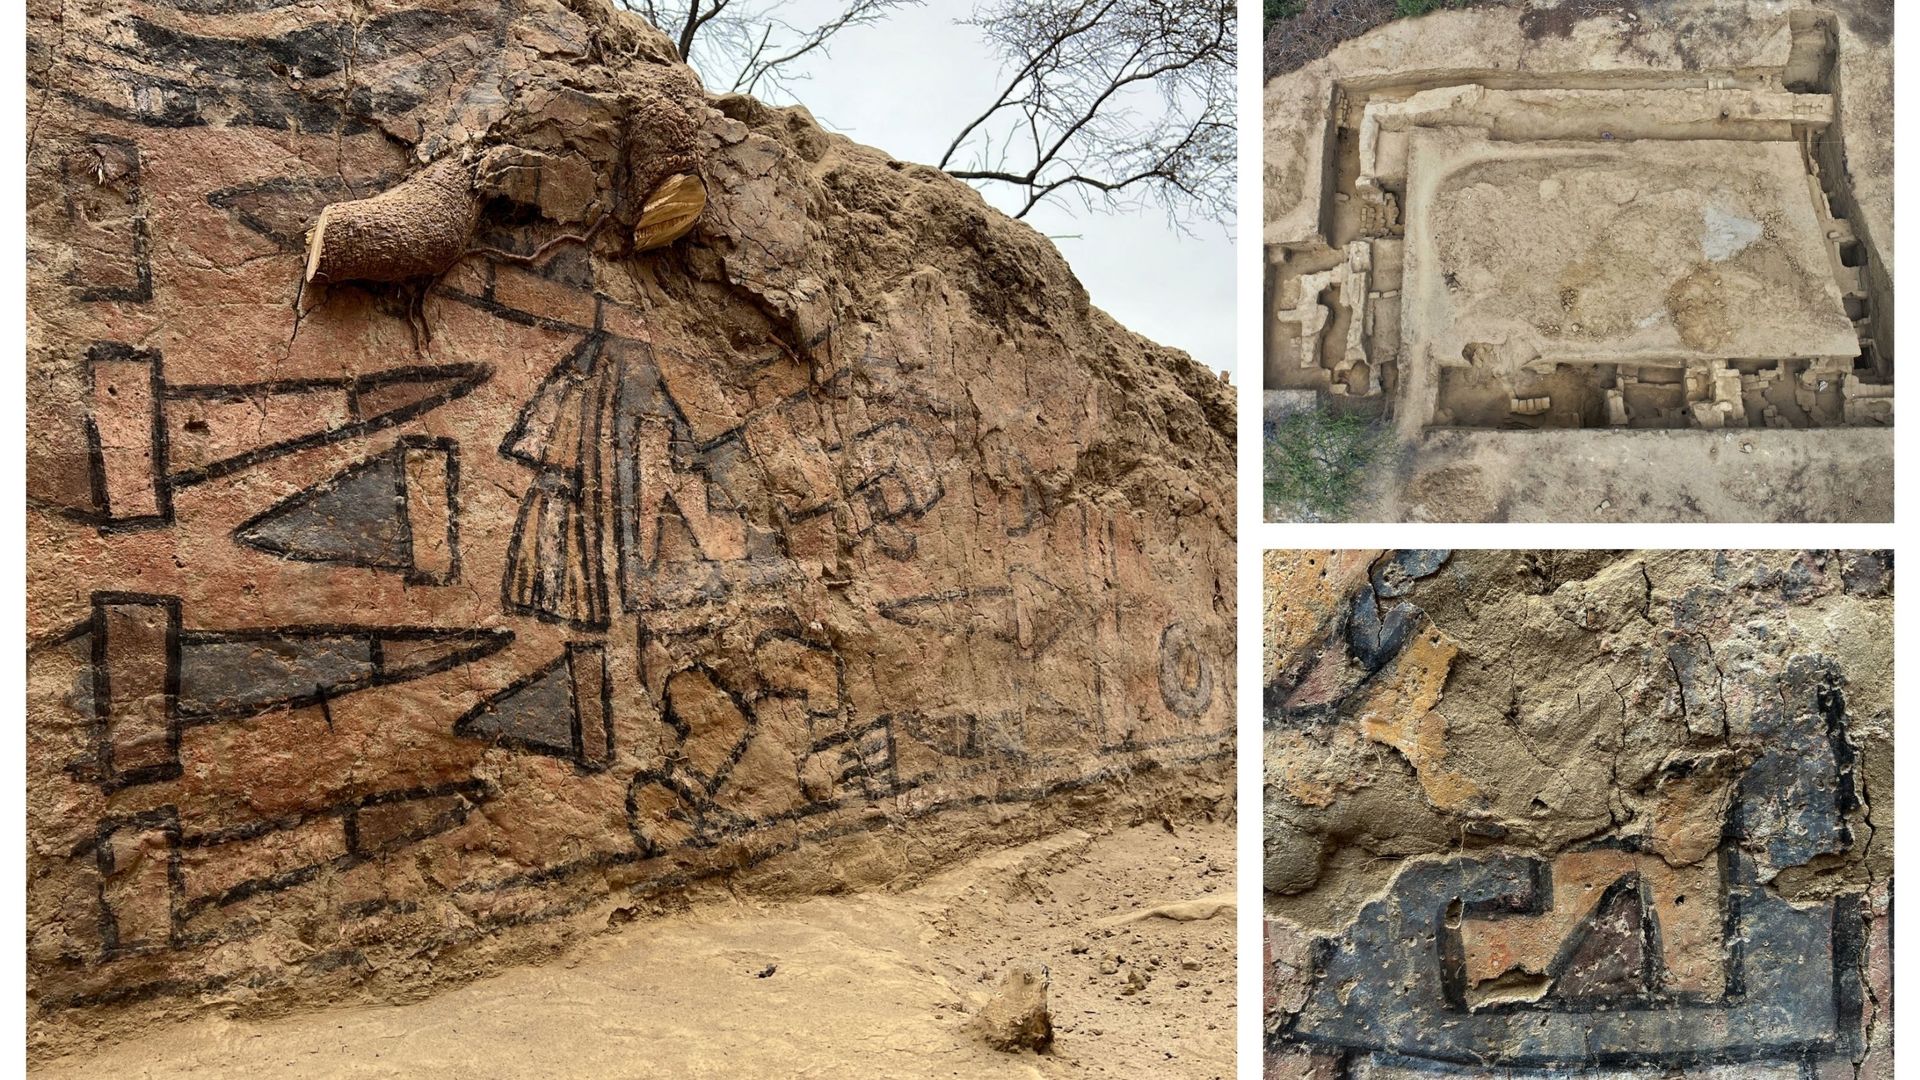 Peinture murale pré-hispanique présentant des scènes mythologiques, découverte près de la ville de Lambayeque, à Illimo, dans le nord du Pérou, après des décennies où elle était considérée comme perdue par les archéologues.